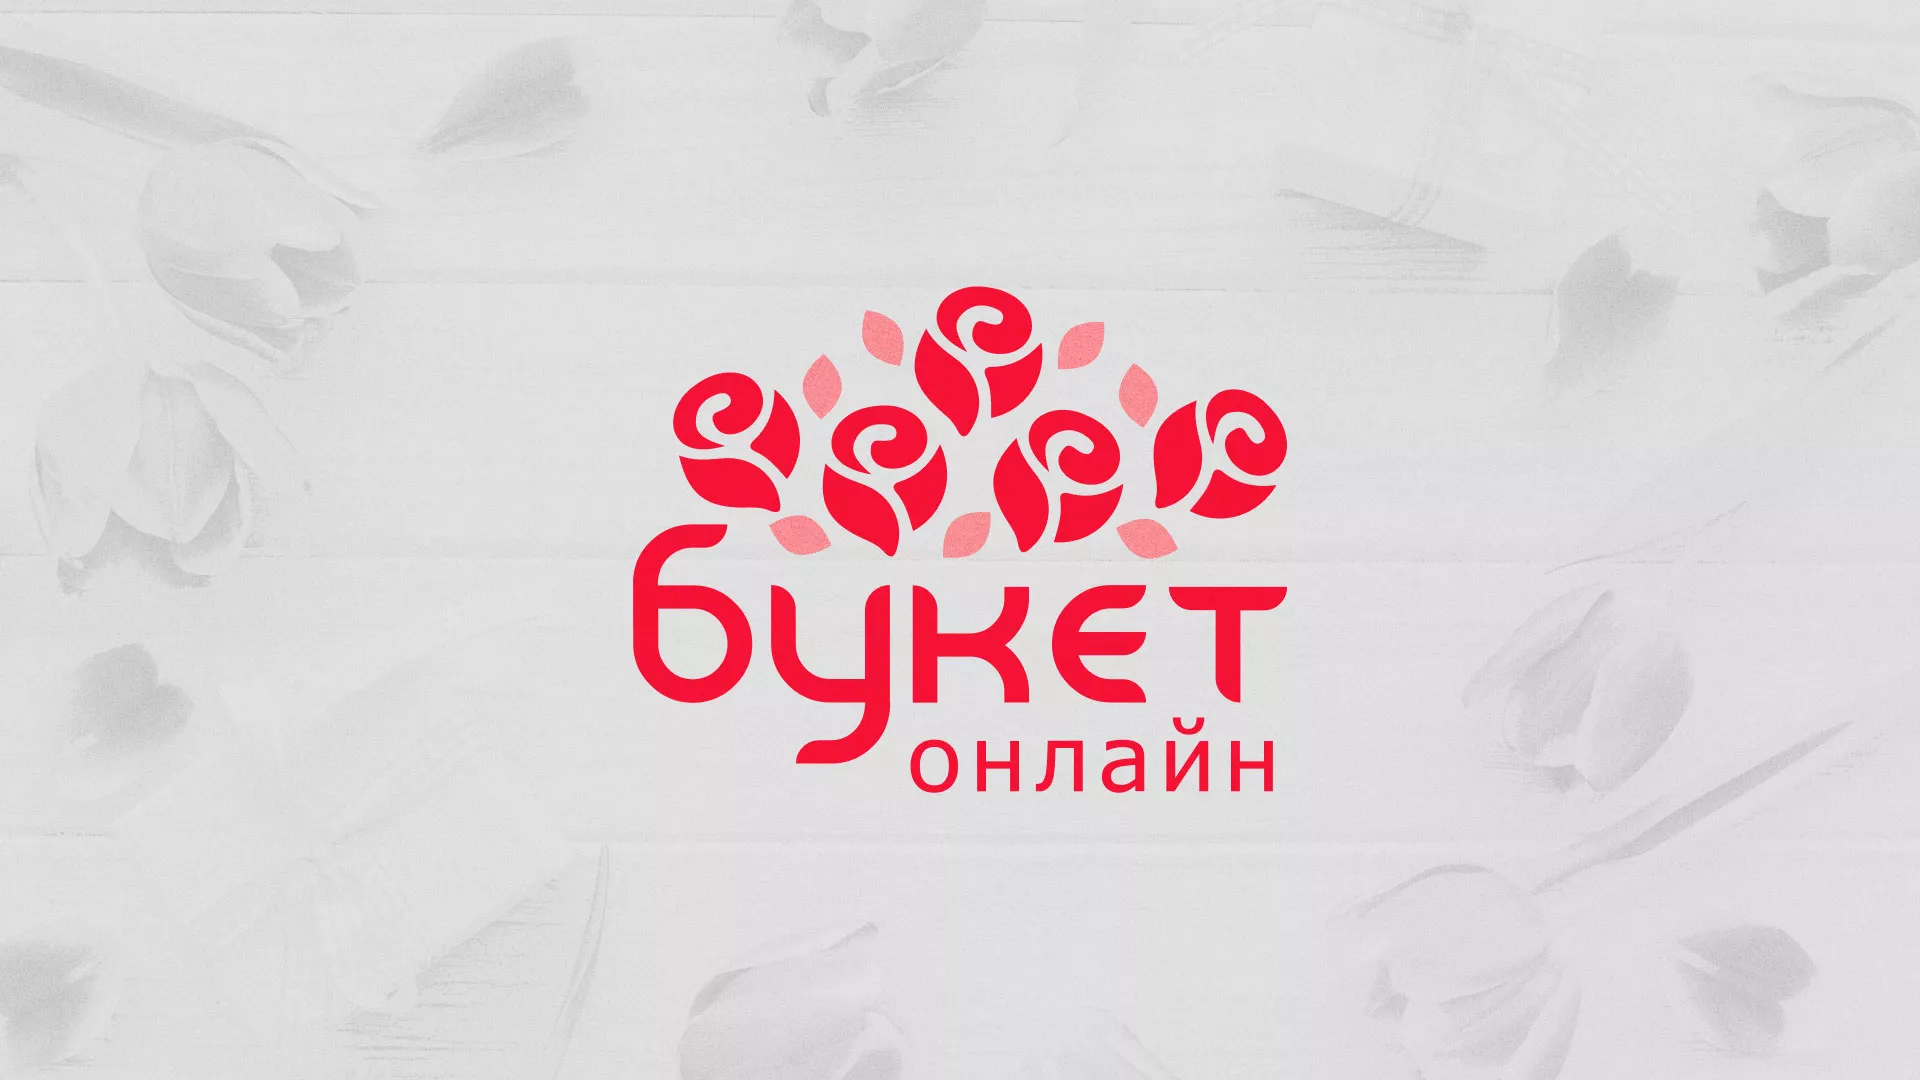 Создание интернет-магазина «Букет-онлайн» по цветам в Болохово